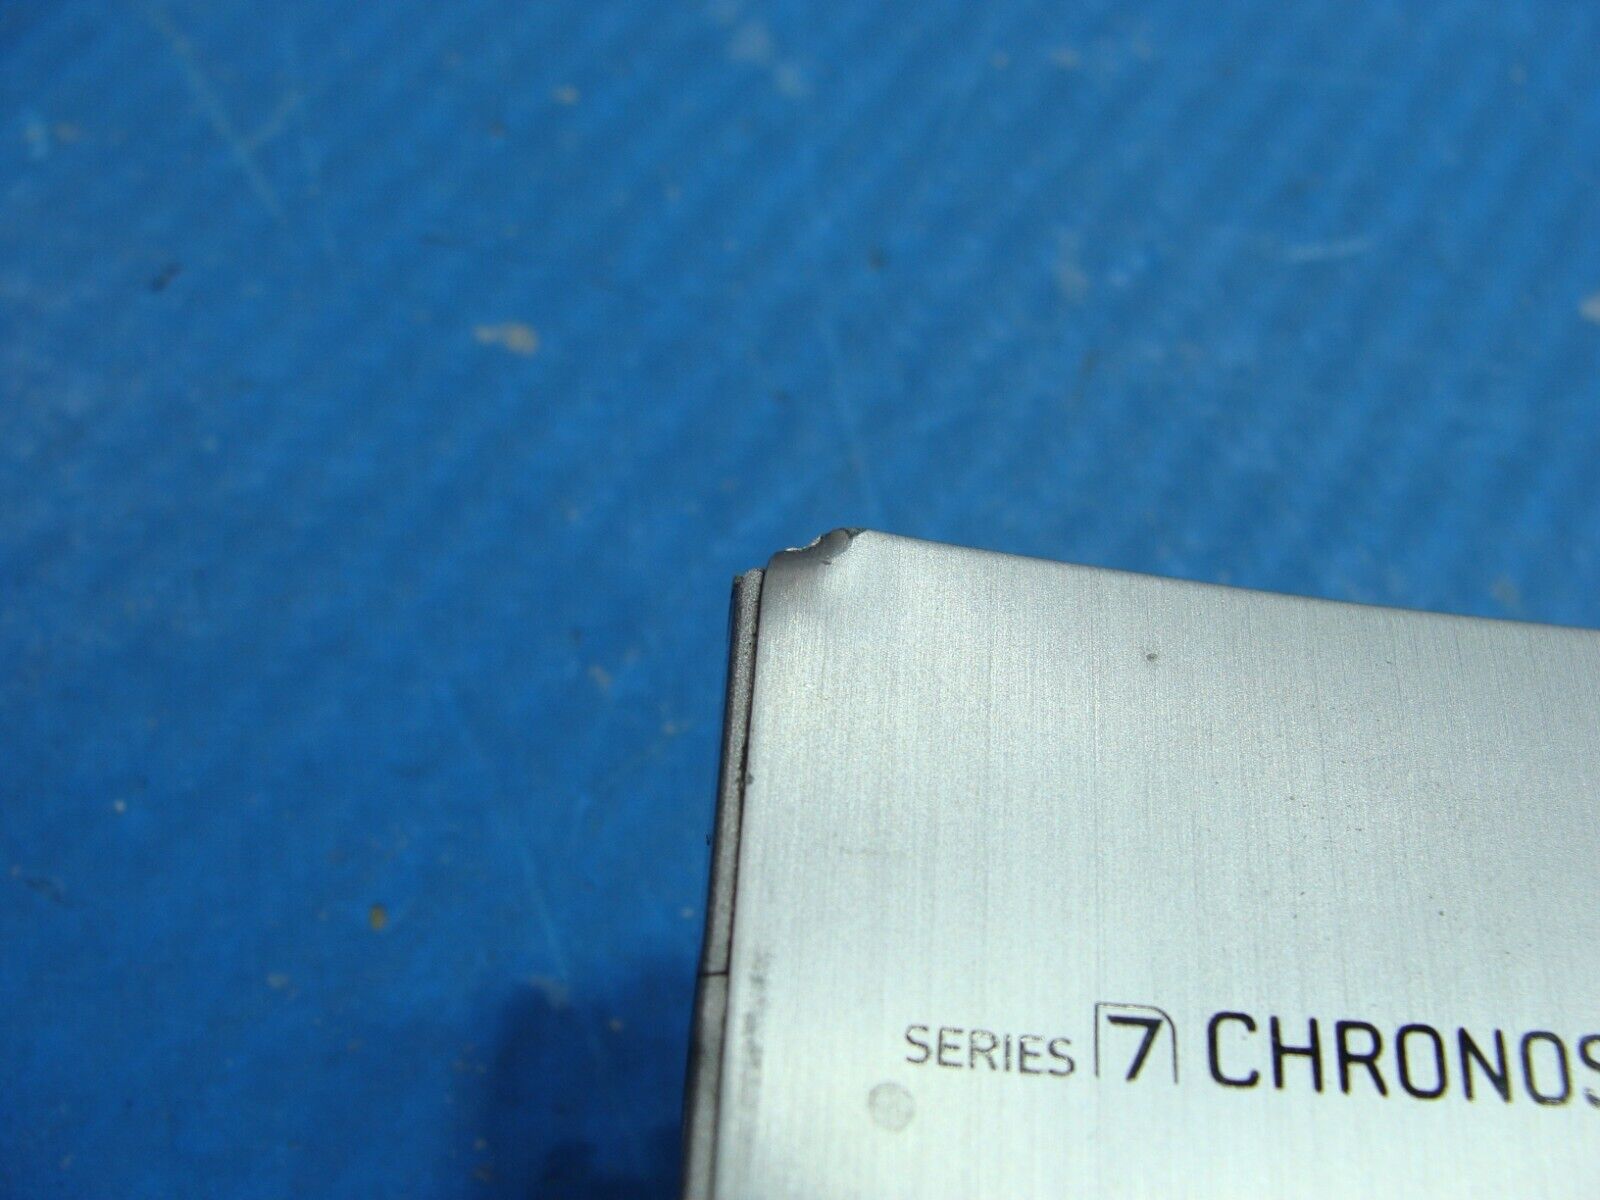 Samsung Chronos NP780Z5E-S01UB 15.6